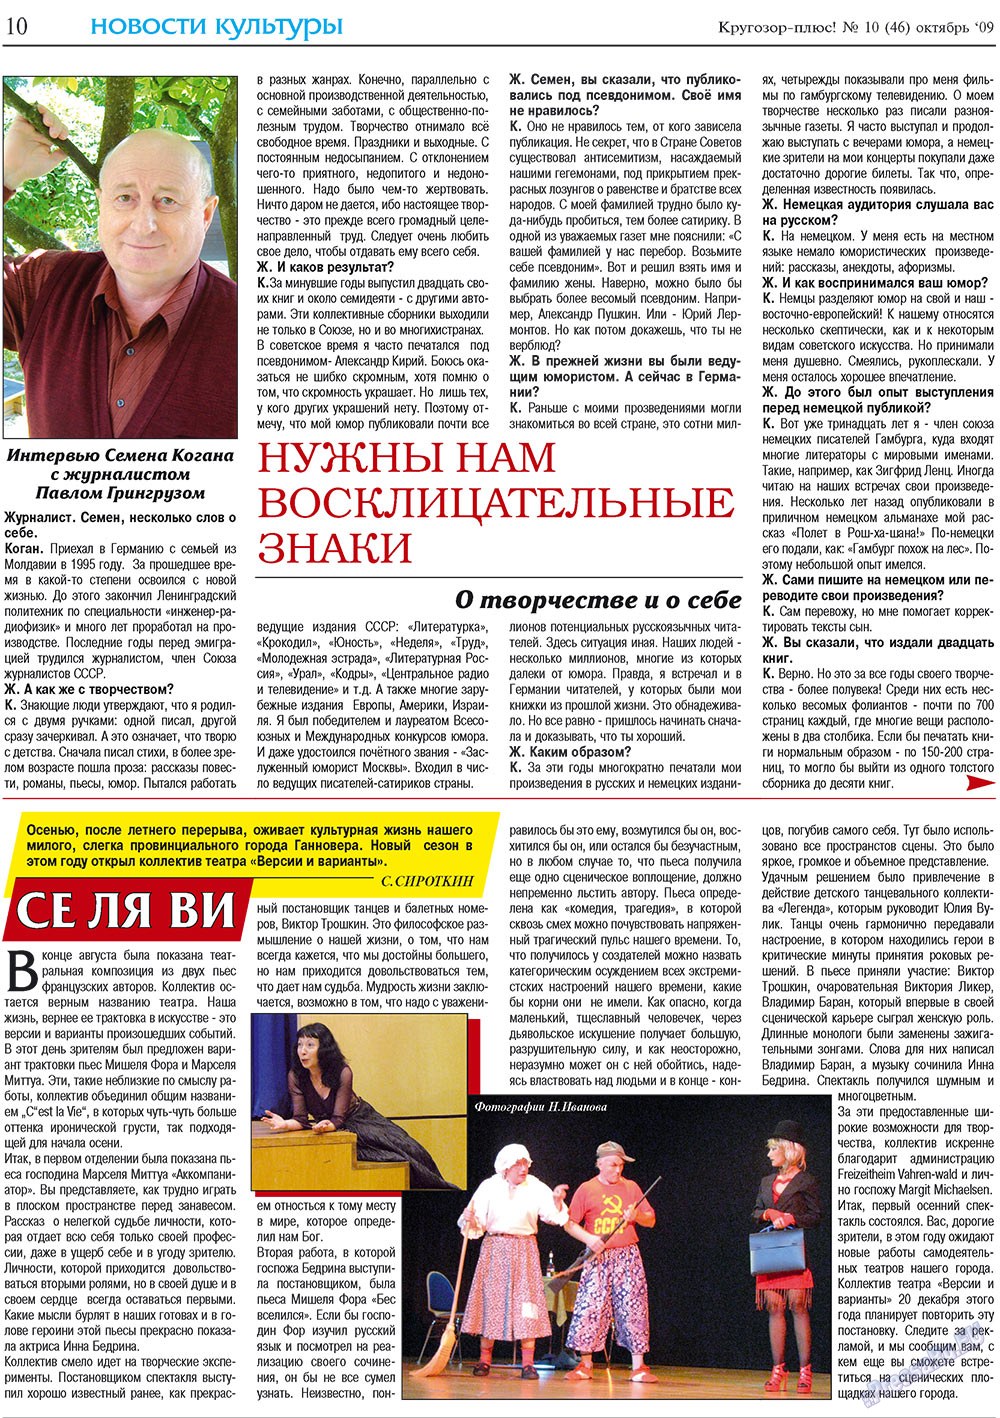 Кругозор плюс!, газета. 2009 №10 стр.10